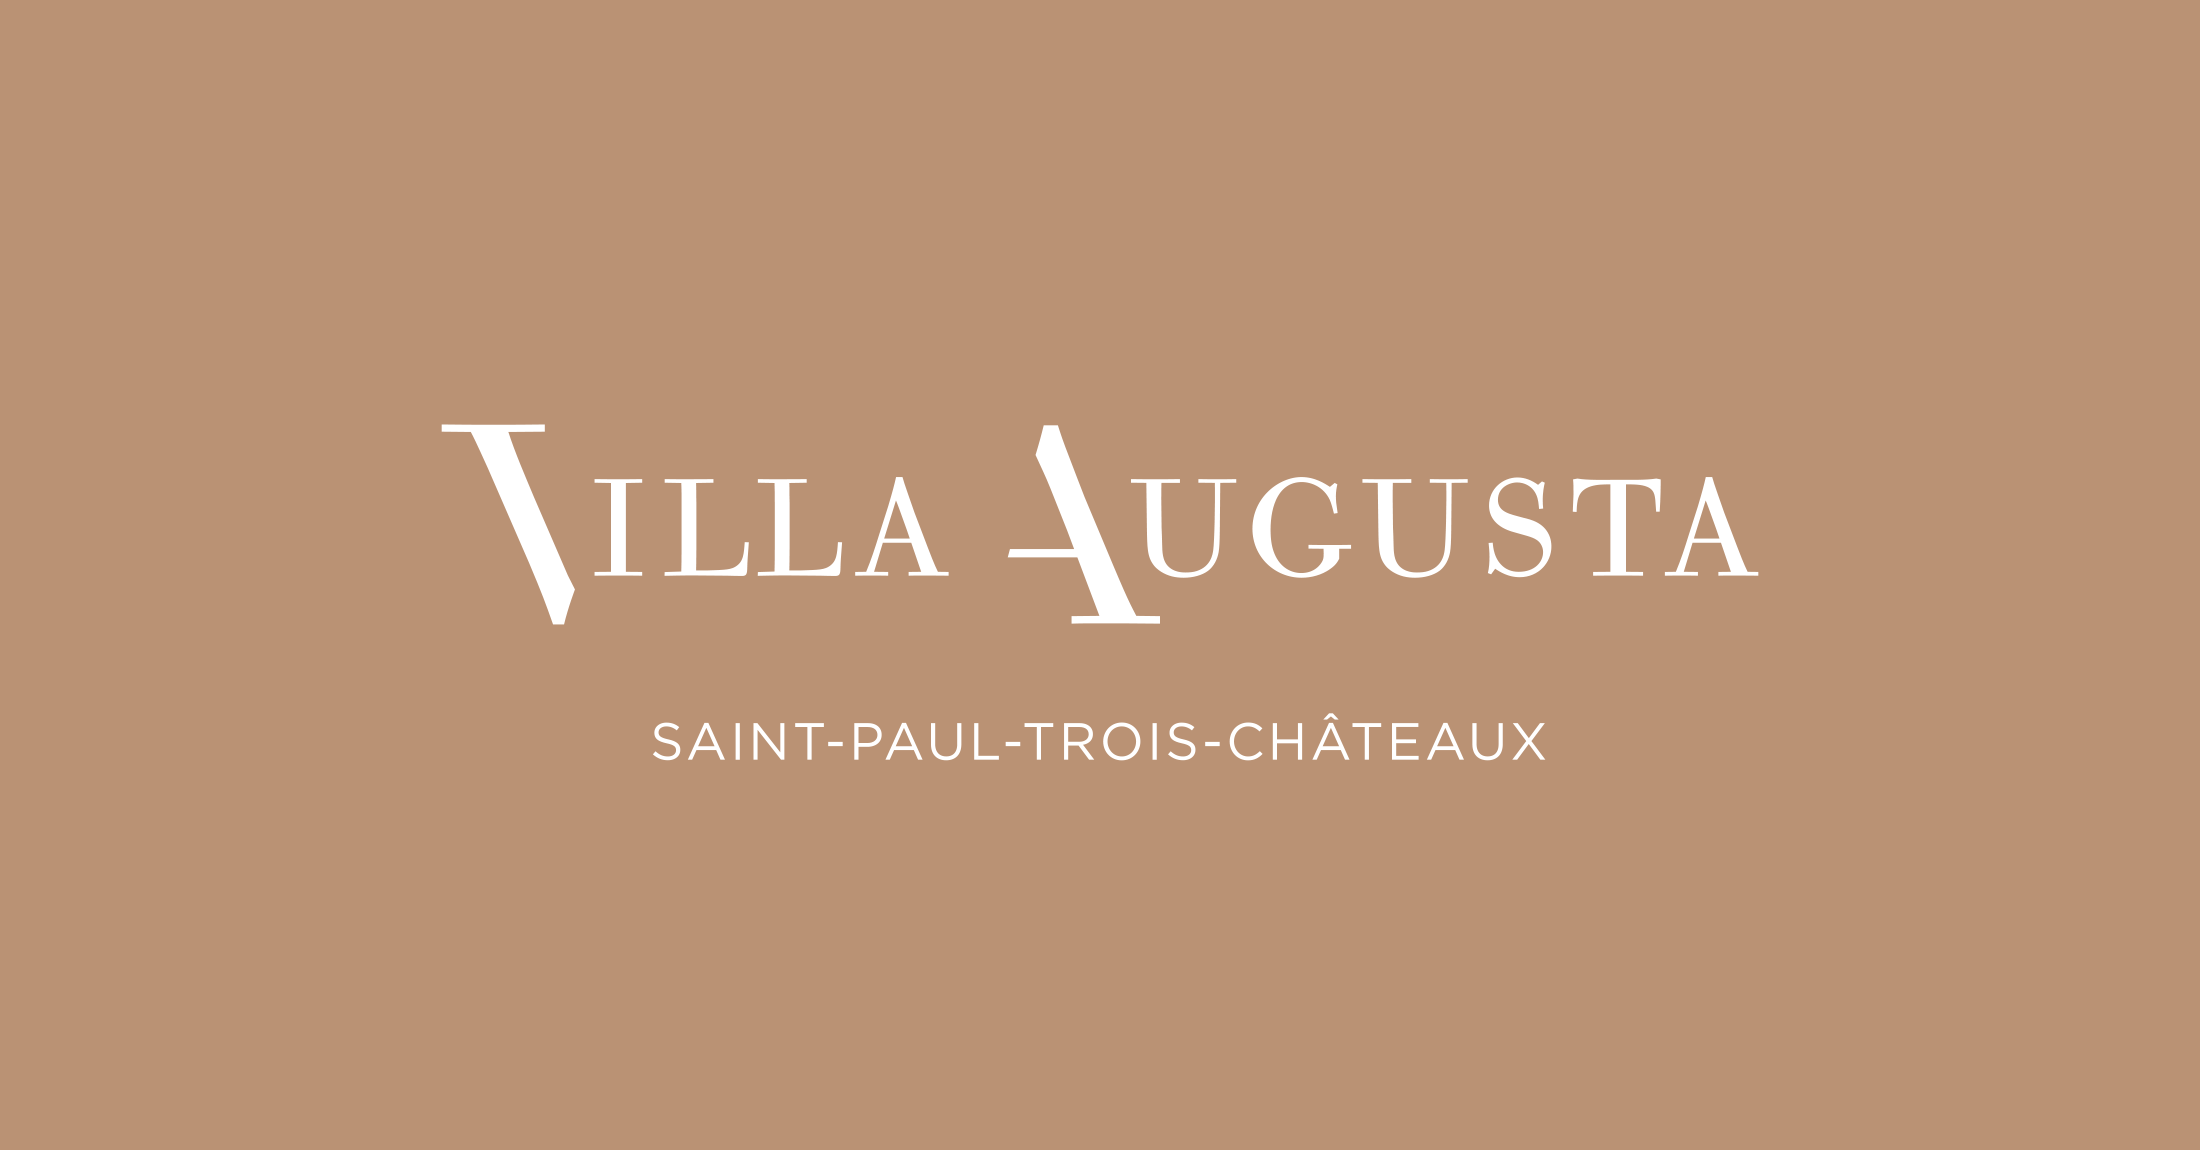 Villa Augusta - Saint Paul Trois Chateaux - logo